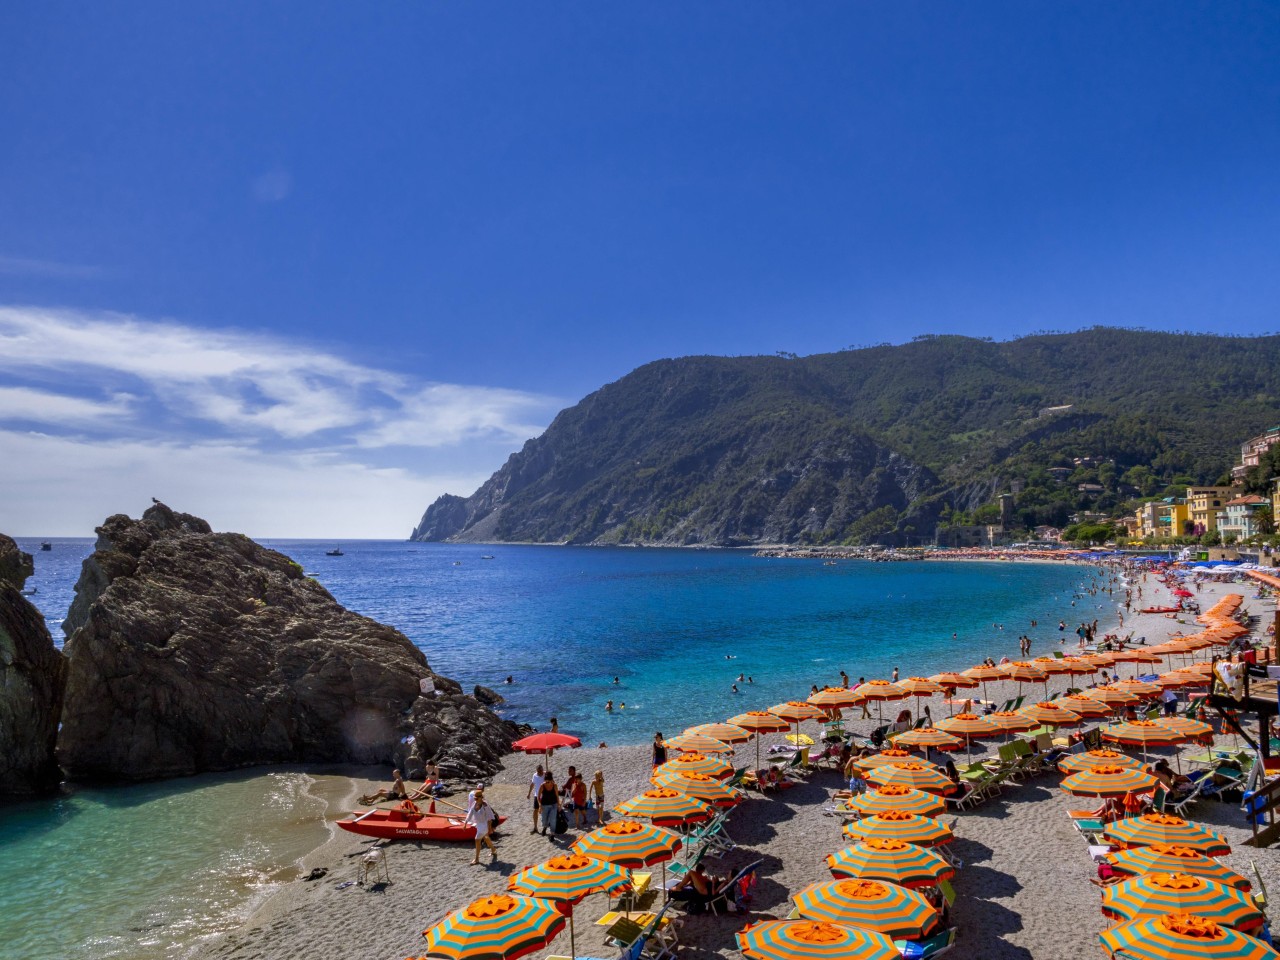 Urlaub in Italien: Urlauber müssen sich auf neue Regeln einstellen. (Symbolbild)